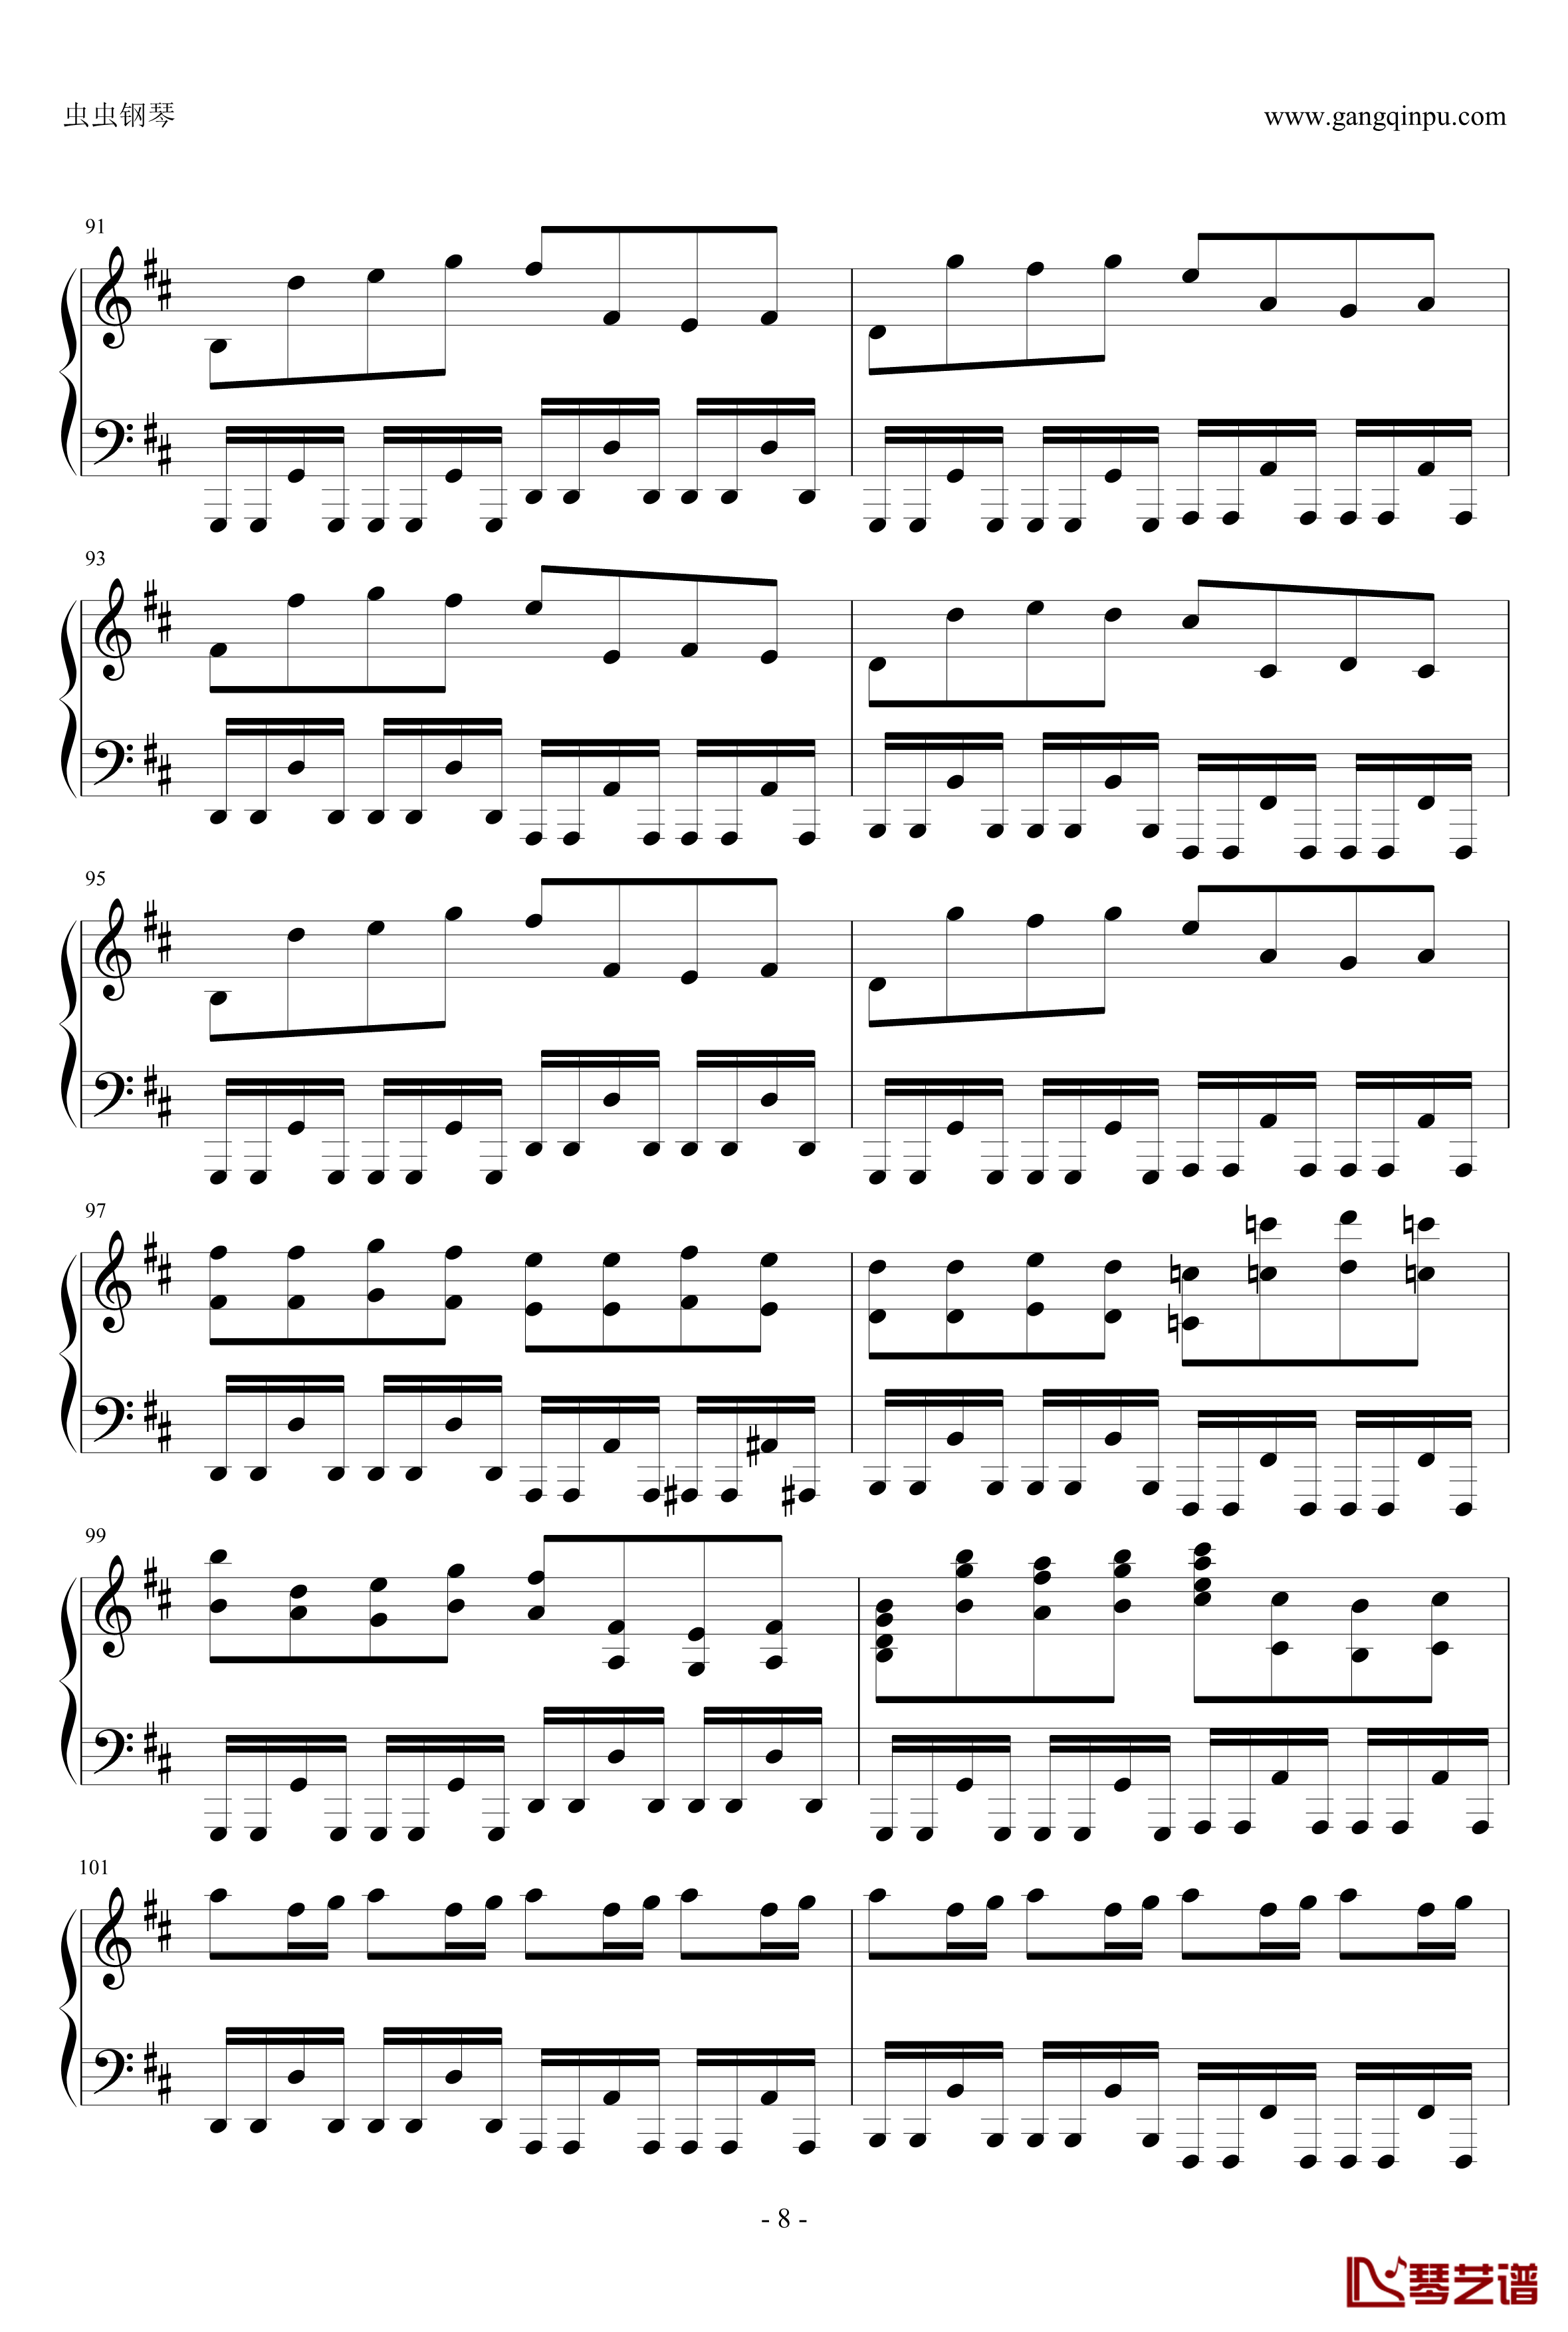 卡农疯狂摇滚版钢琴谱-约翰·巴哈贝尔8